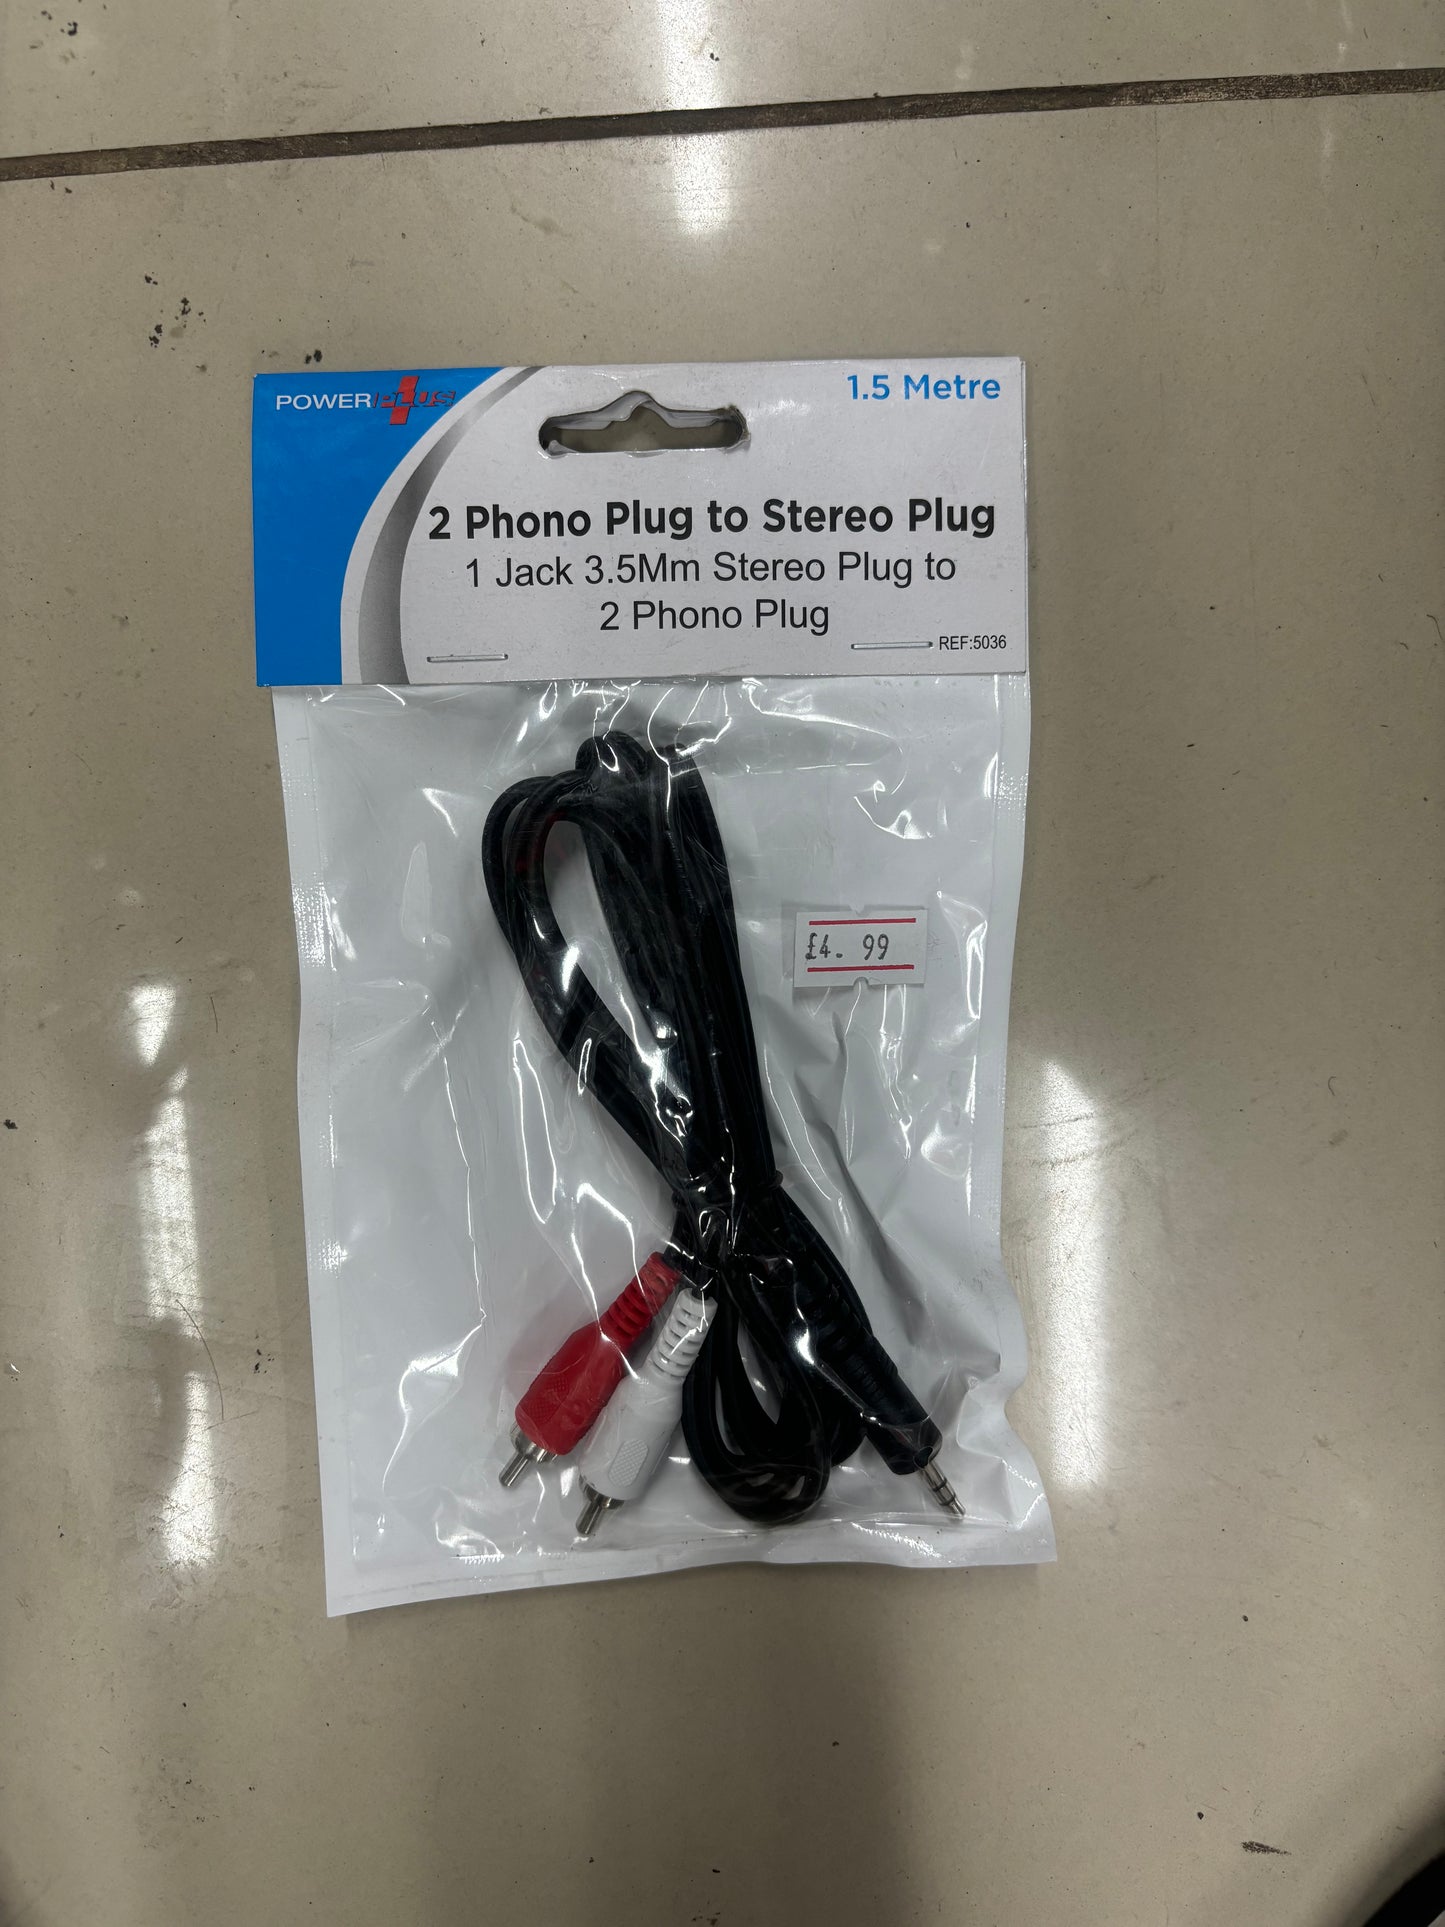 2phone plug to stereo plug